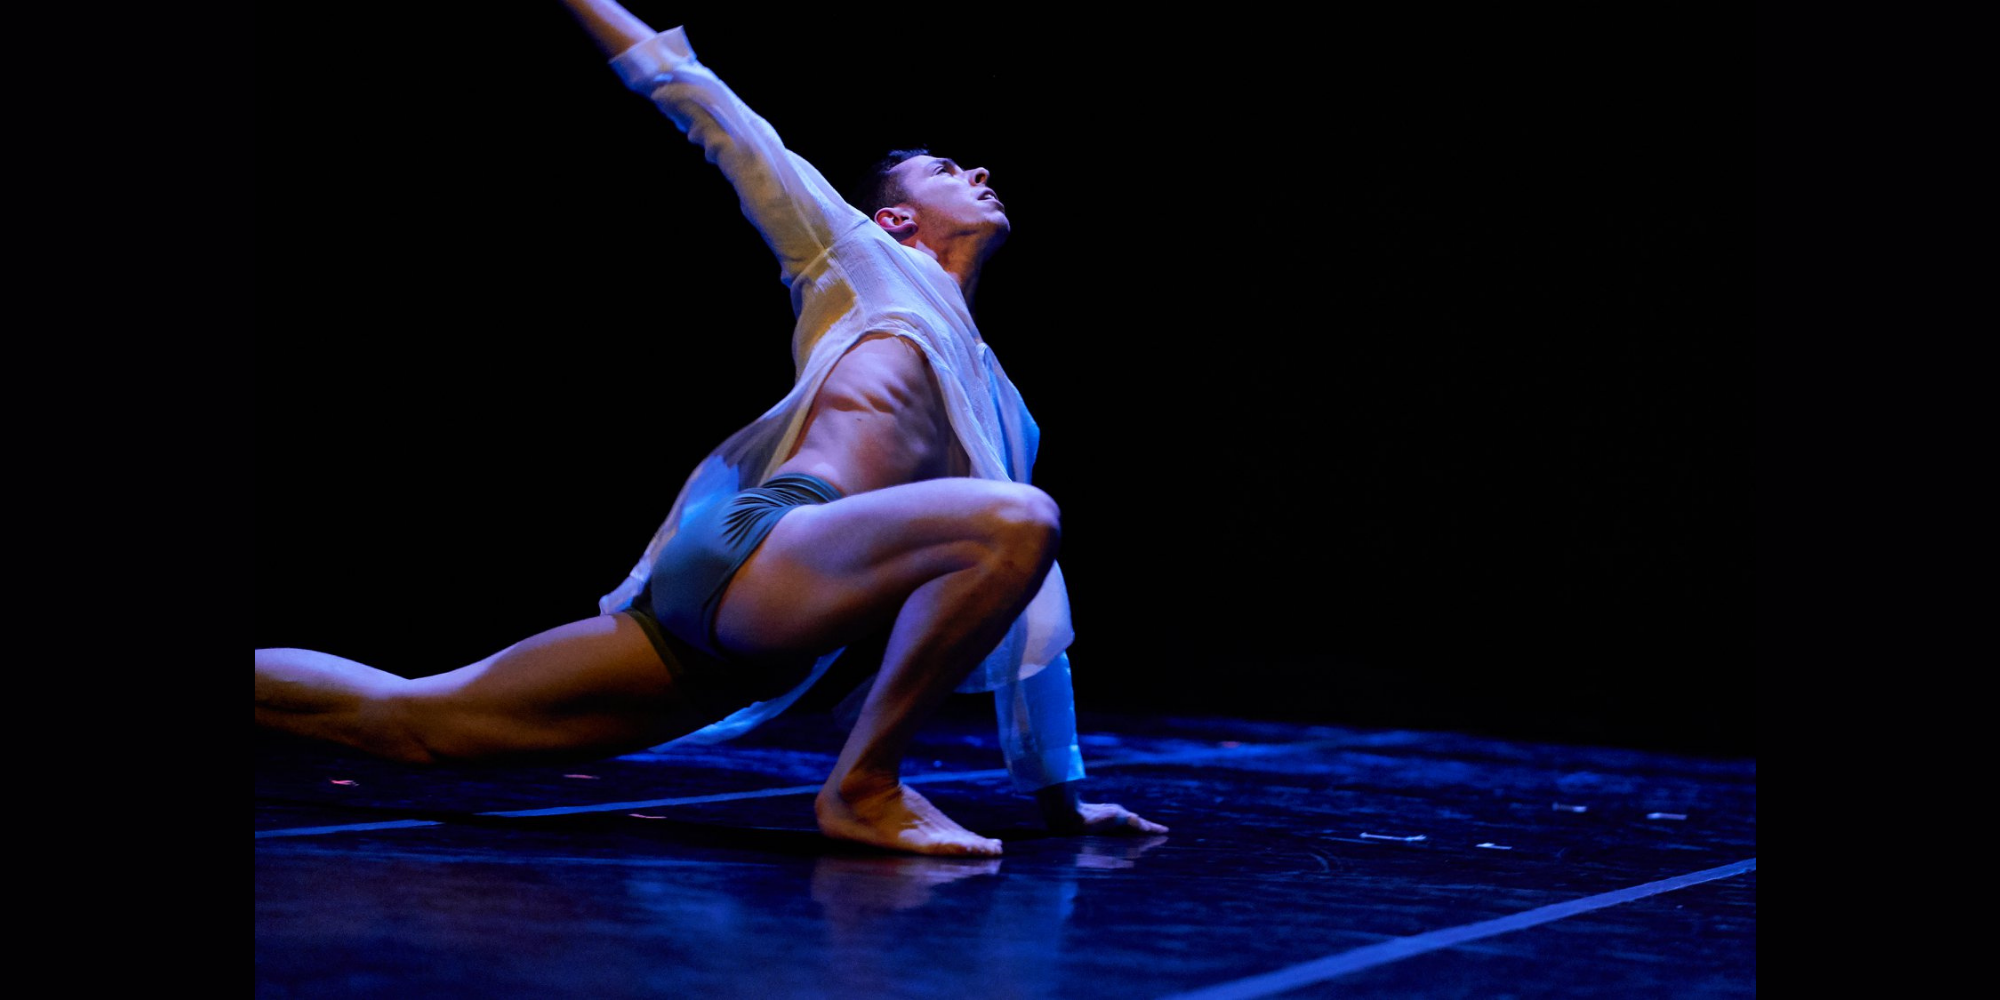 Ardent Stillness
Choreography: Meghen McKinley
PC: Jeff Smith